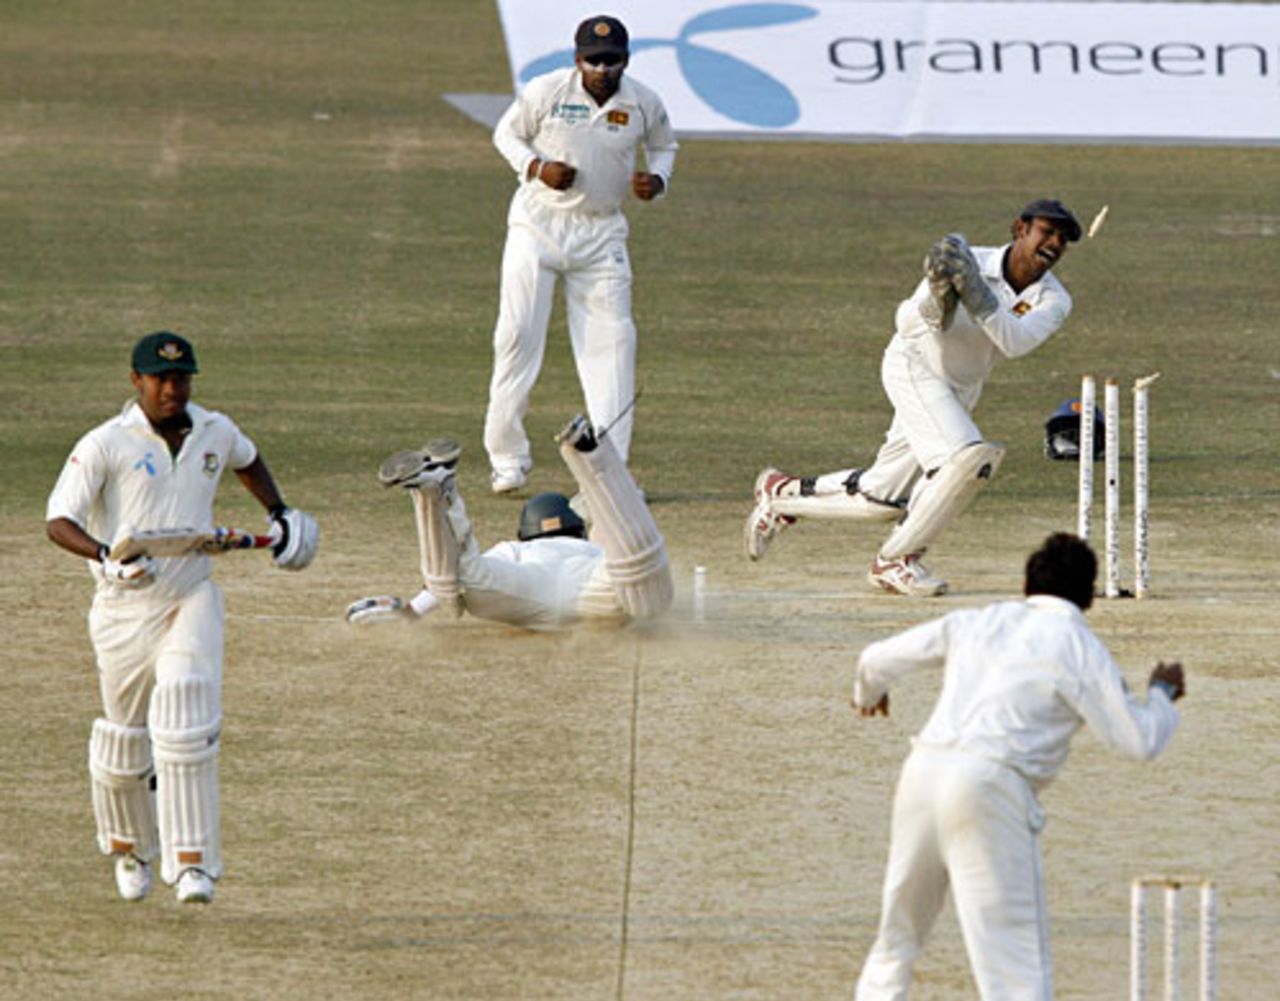 Prasanna Jayawardene runs out Mushfiqur Rahim, Bangladesh v Sri Lanka, 2nd Test, Chittagong, 4th day, January 6, 2008